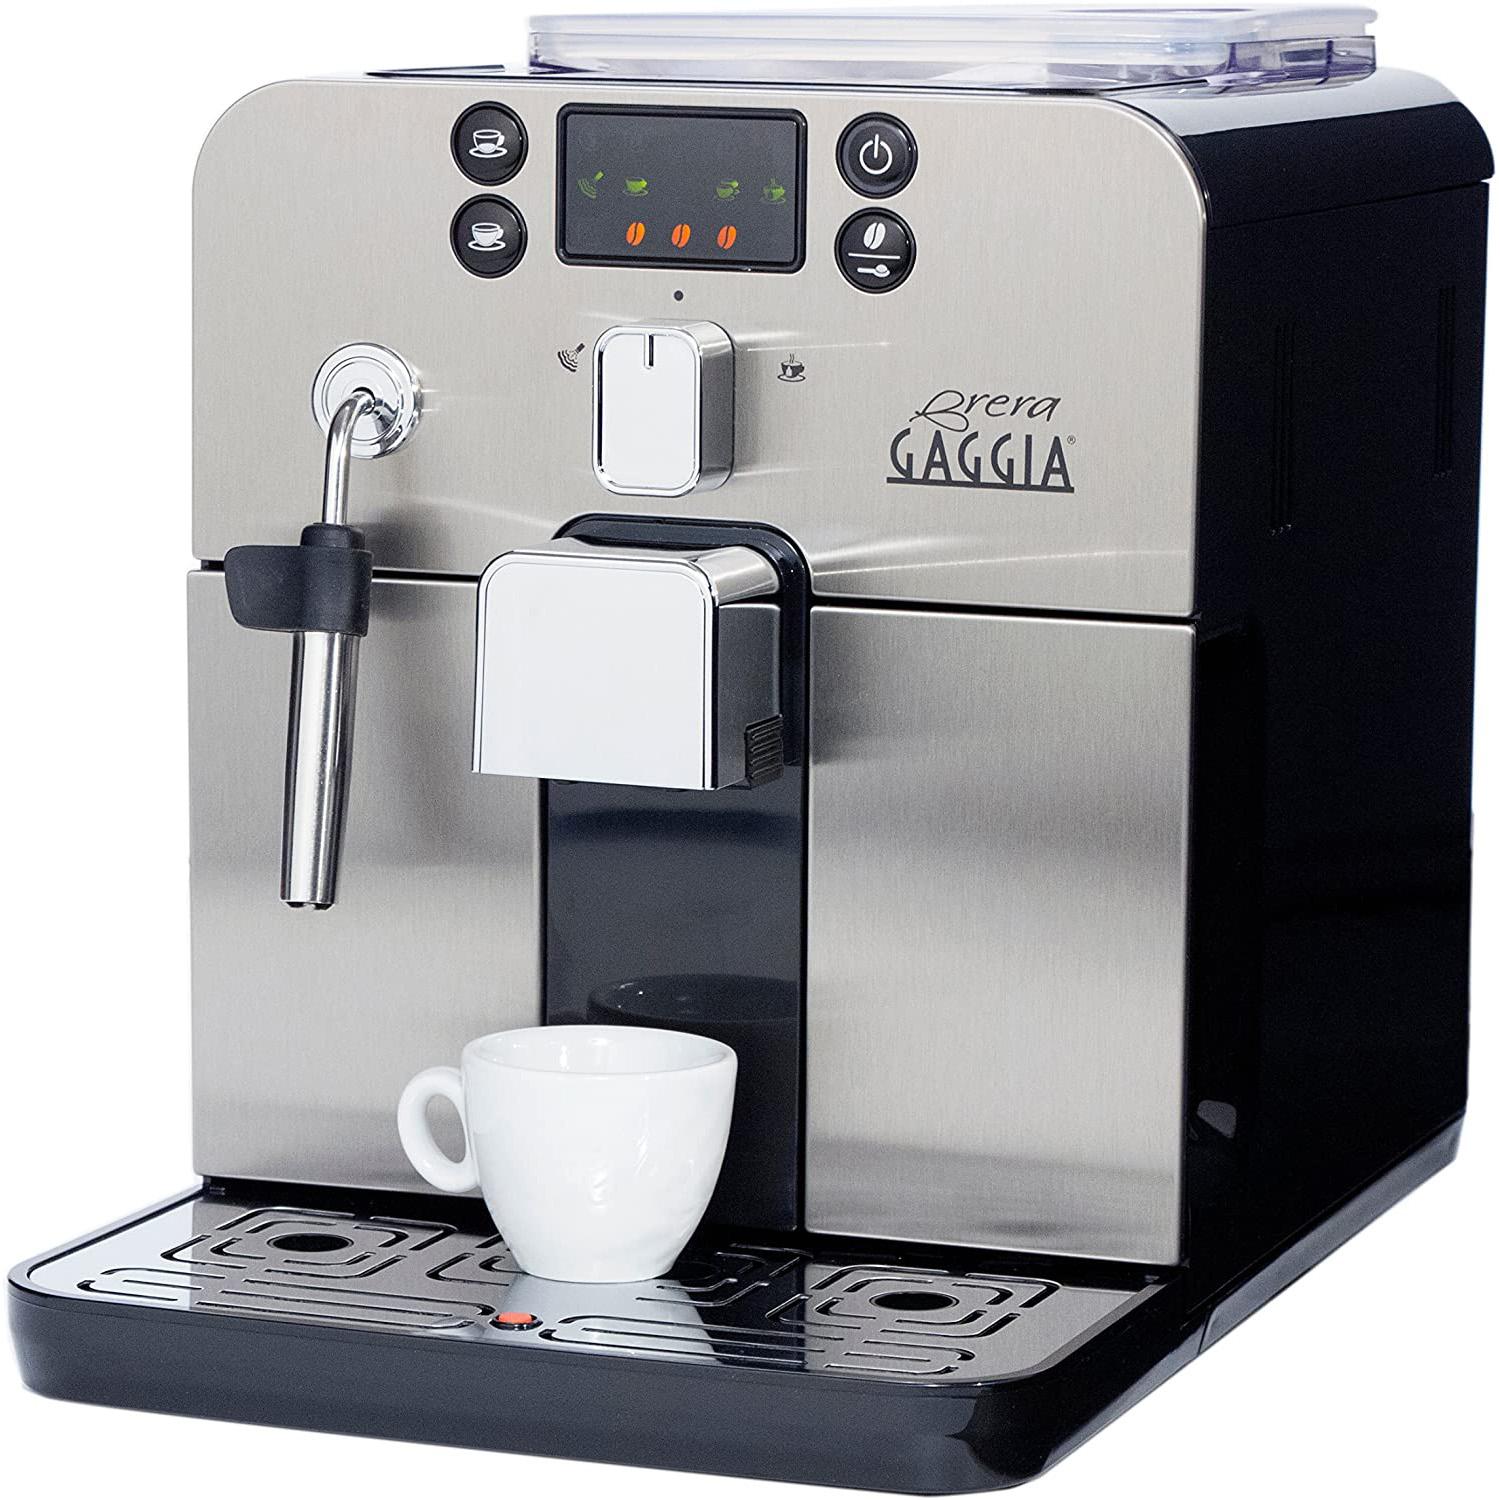 Gaggia Brera Super Automatic Espresso Machine for $383.01 Shipped